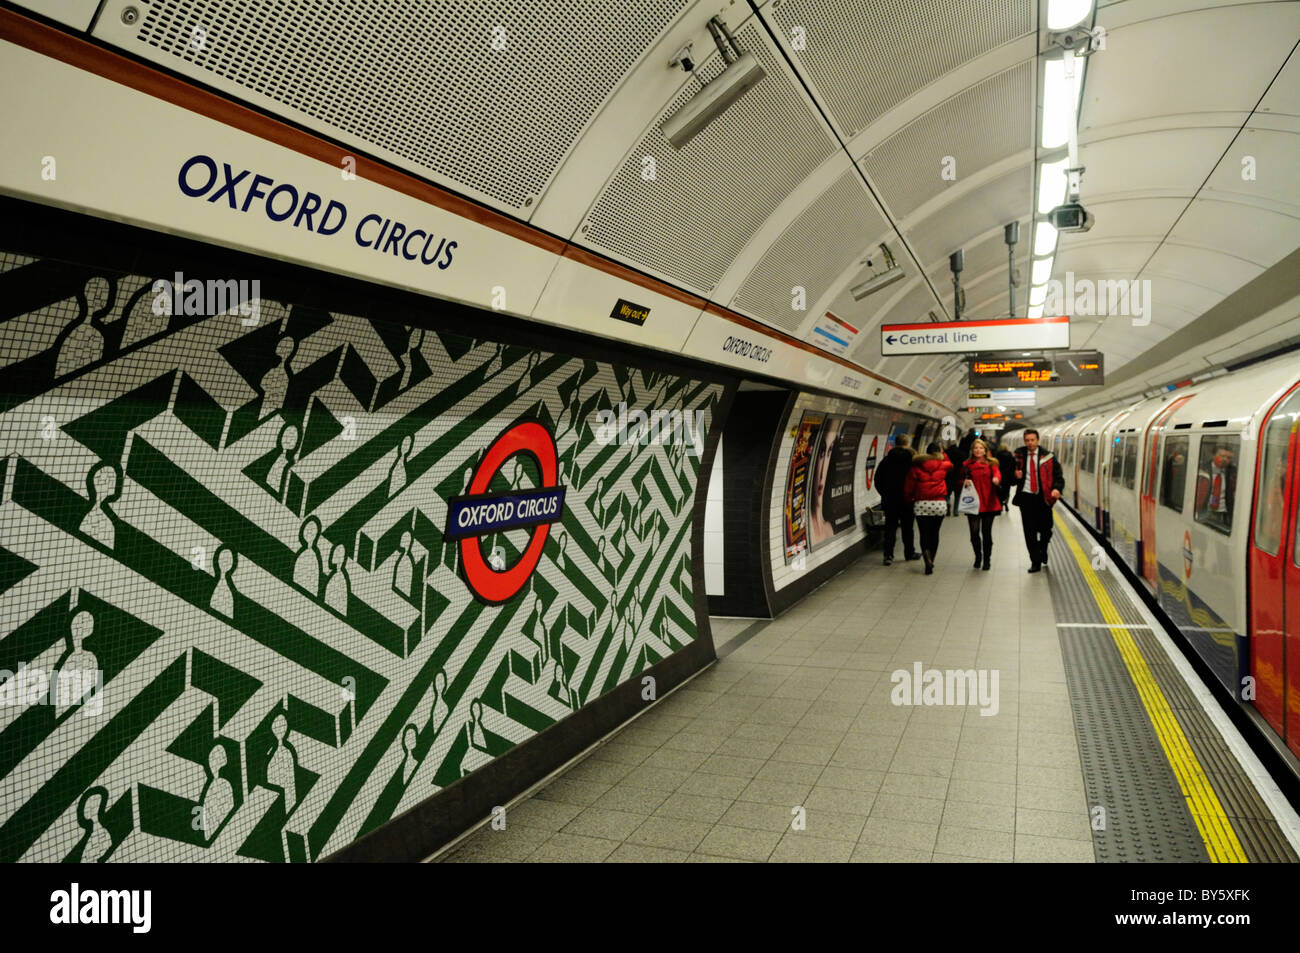 Oxford Circus Underground Tube Station, London, England, UK Stock Photo -  Alamy